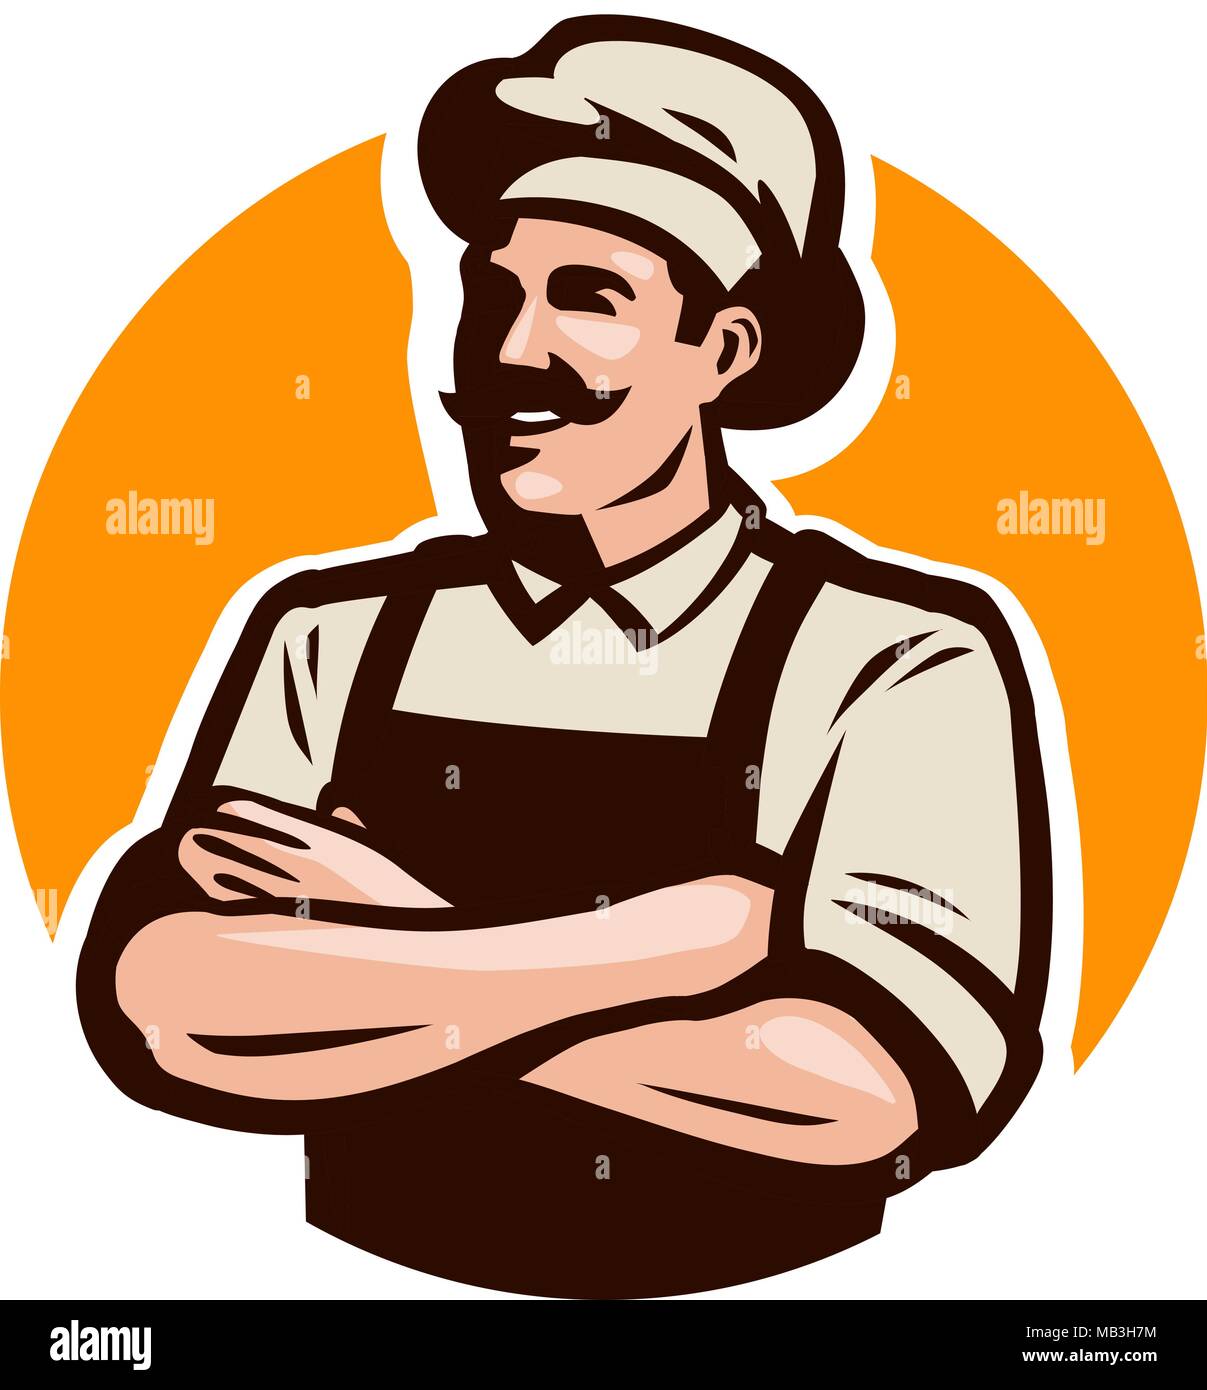 Koch, Koch oder Bäcker Logo. Cafe, Restaurant, Menü Konzept. Cartoon Vector Illustration Stock Vektor